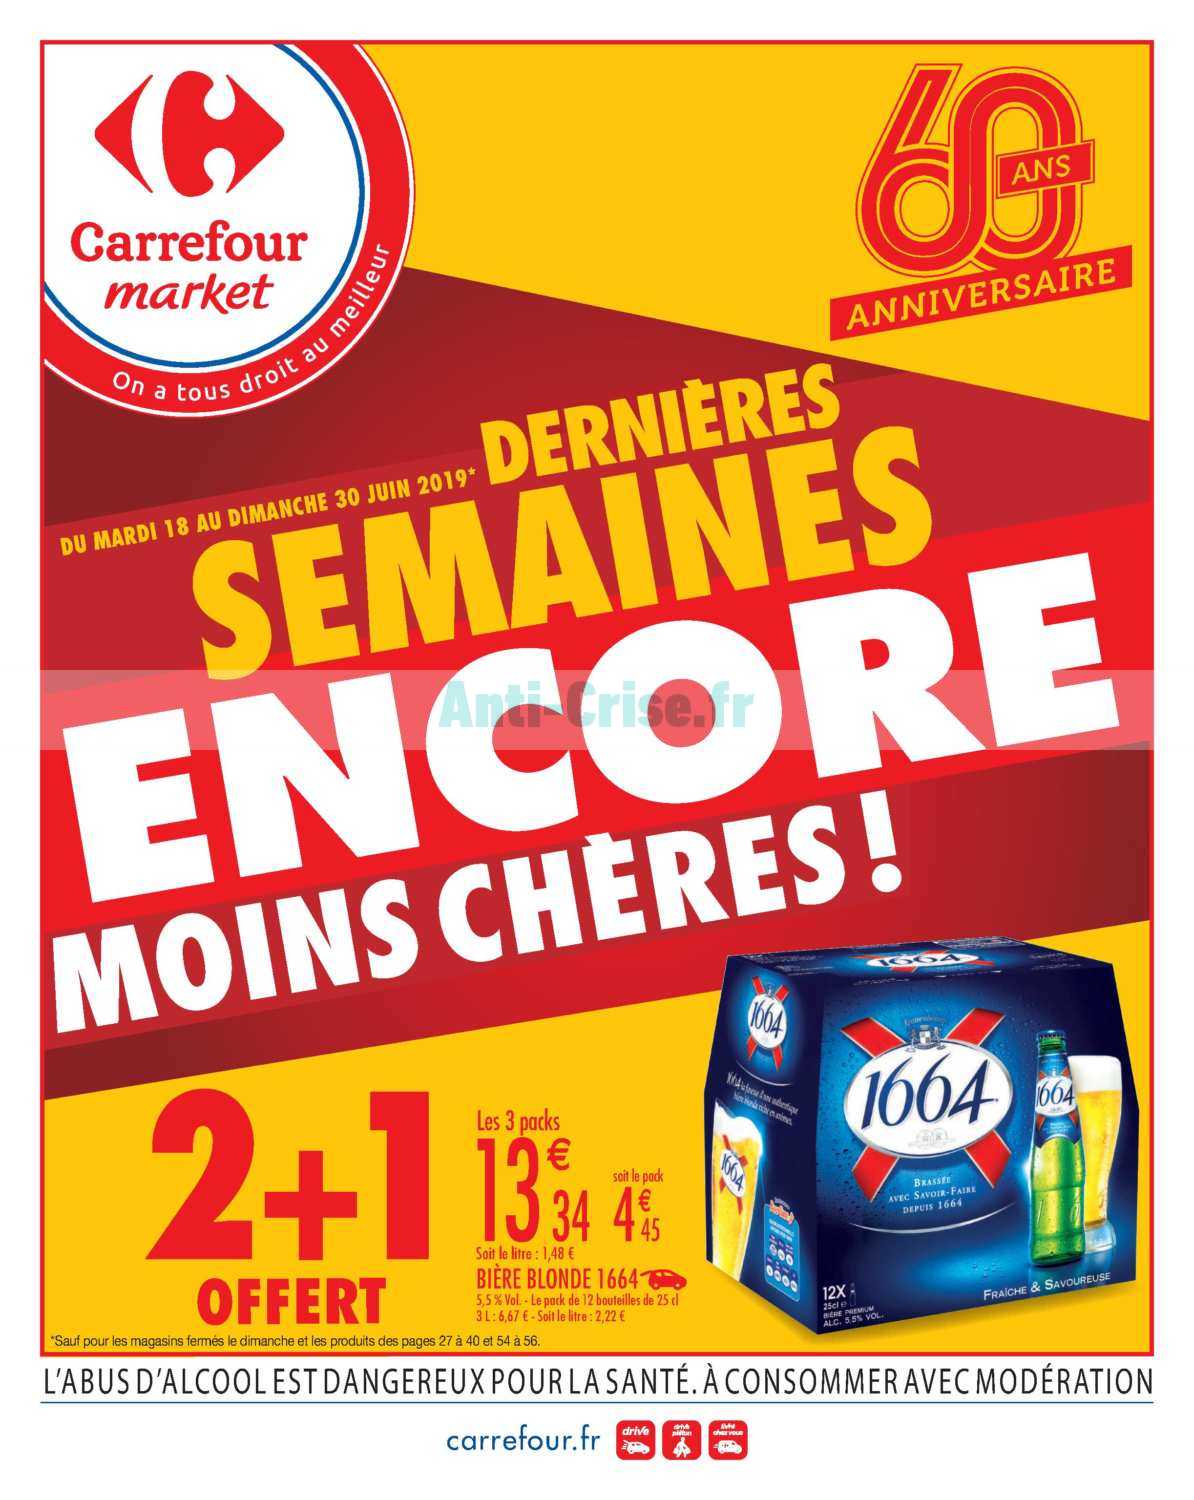 Carrefour Market Le Nouveau Catalogue Du 18 Au 30 Juin 19 Est Disponible Voici Les Dernieres Promos A Ne Pas Manquer